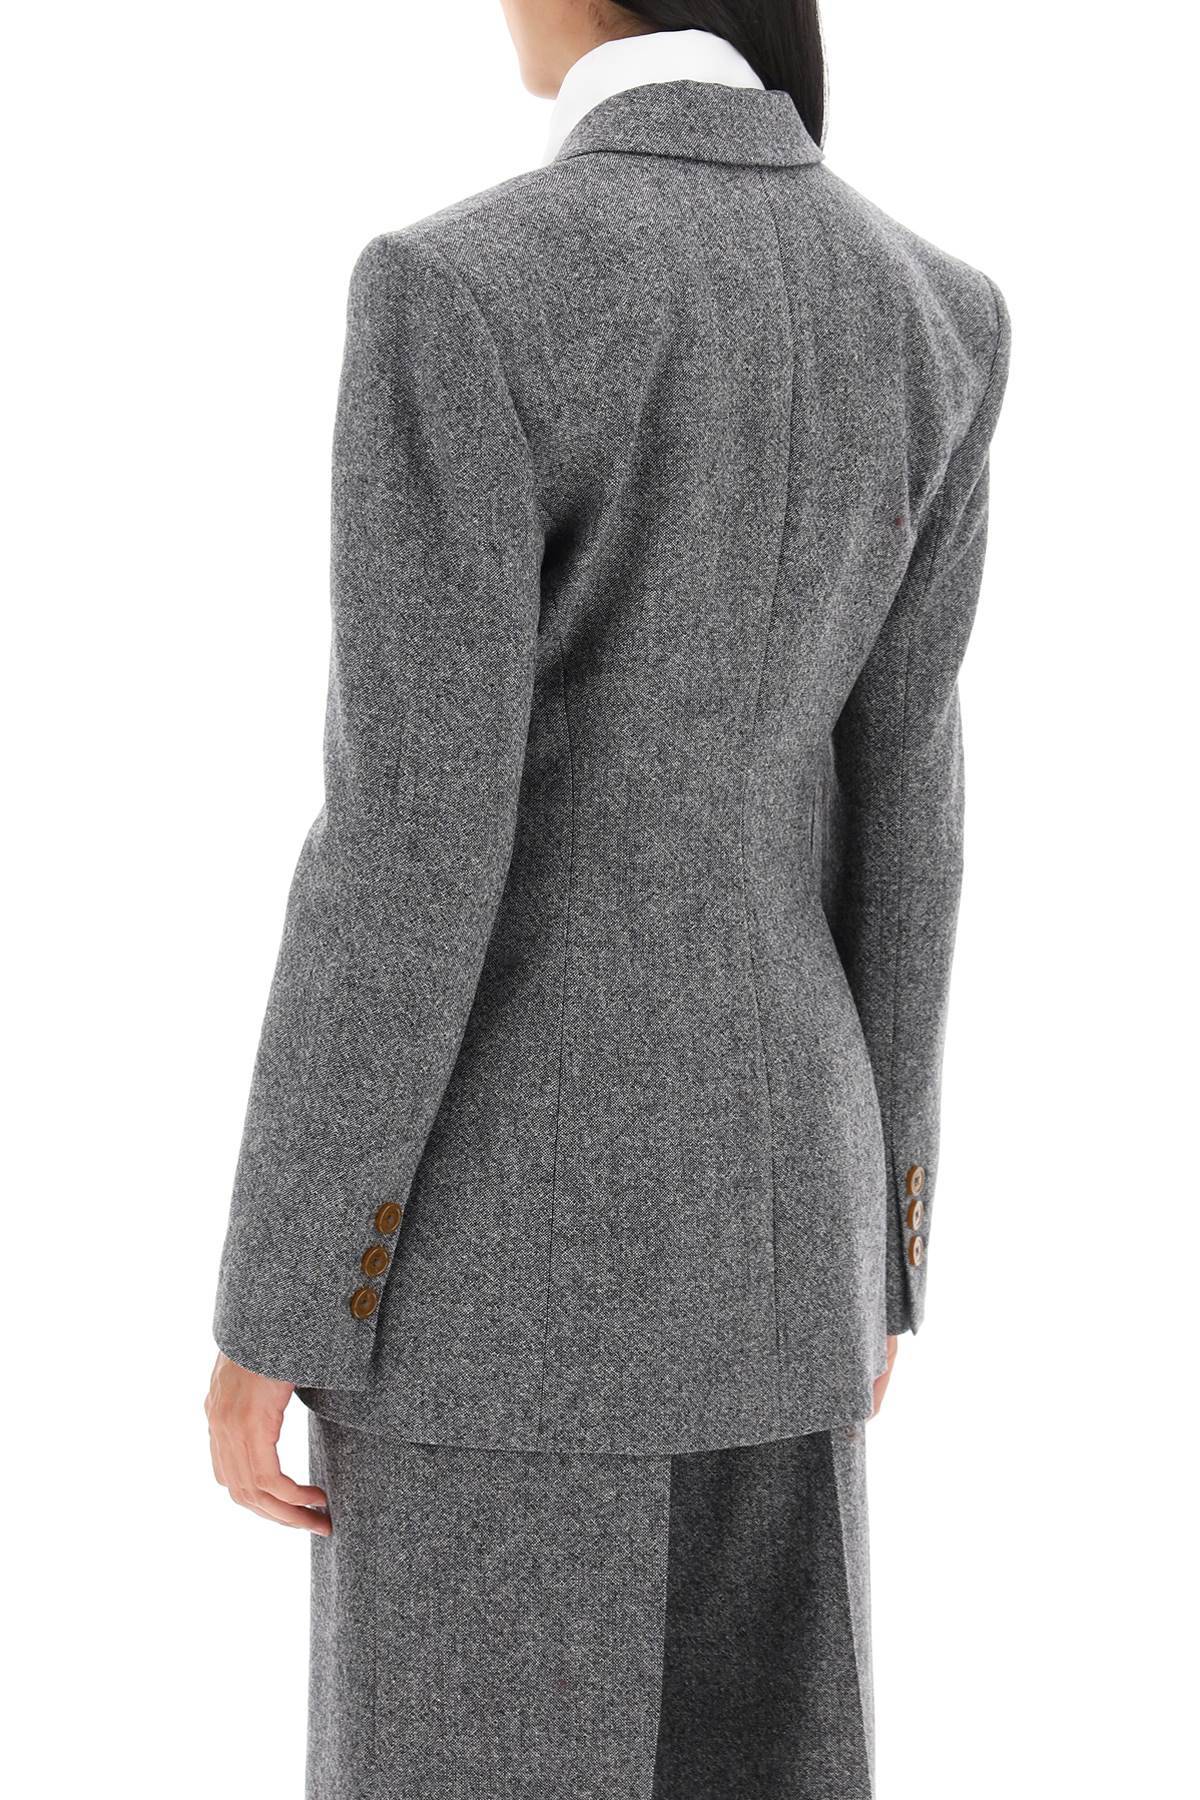 Shop Vivienne Westwood Lauren Jacket In Donegal Tweed In White,black